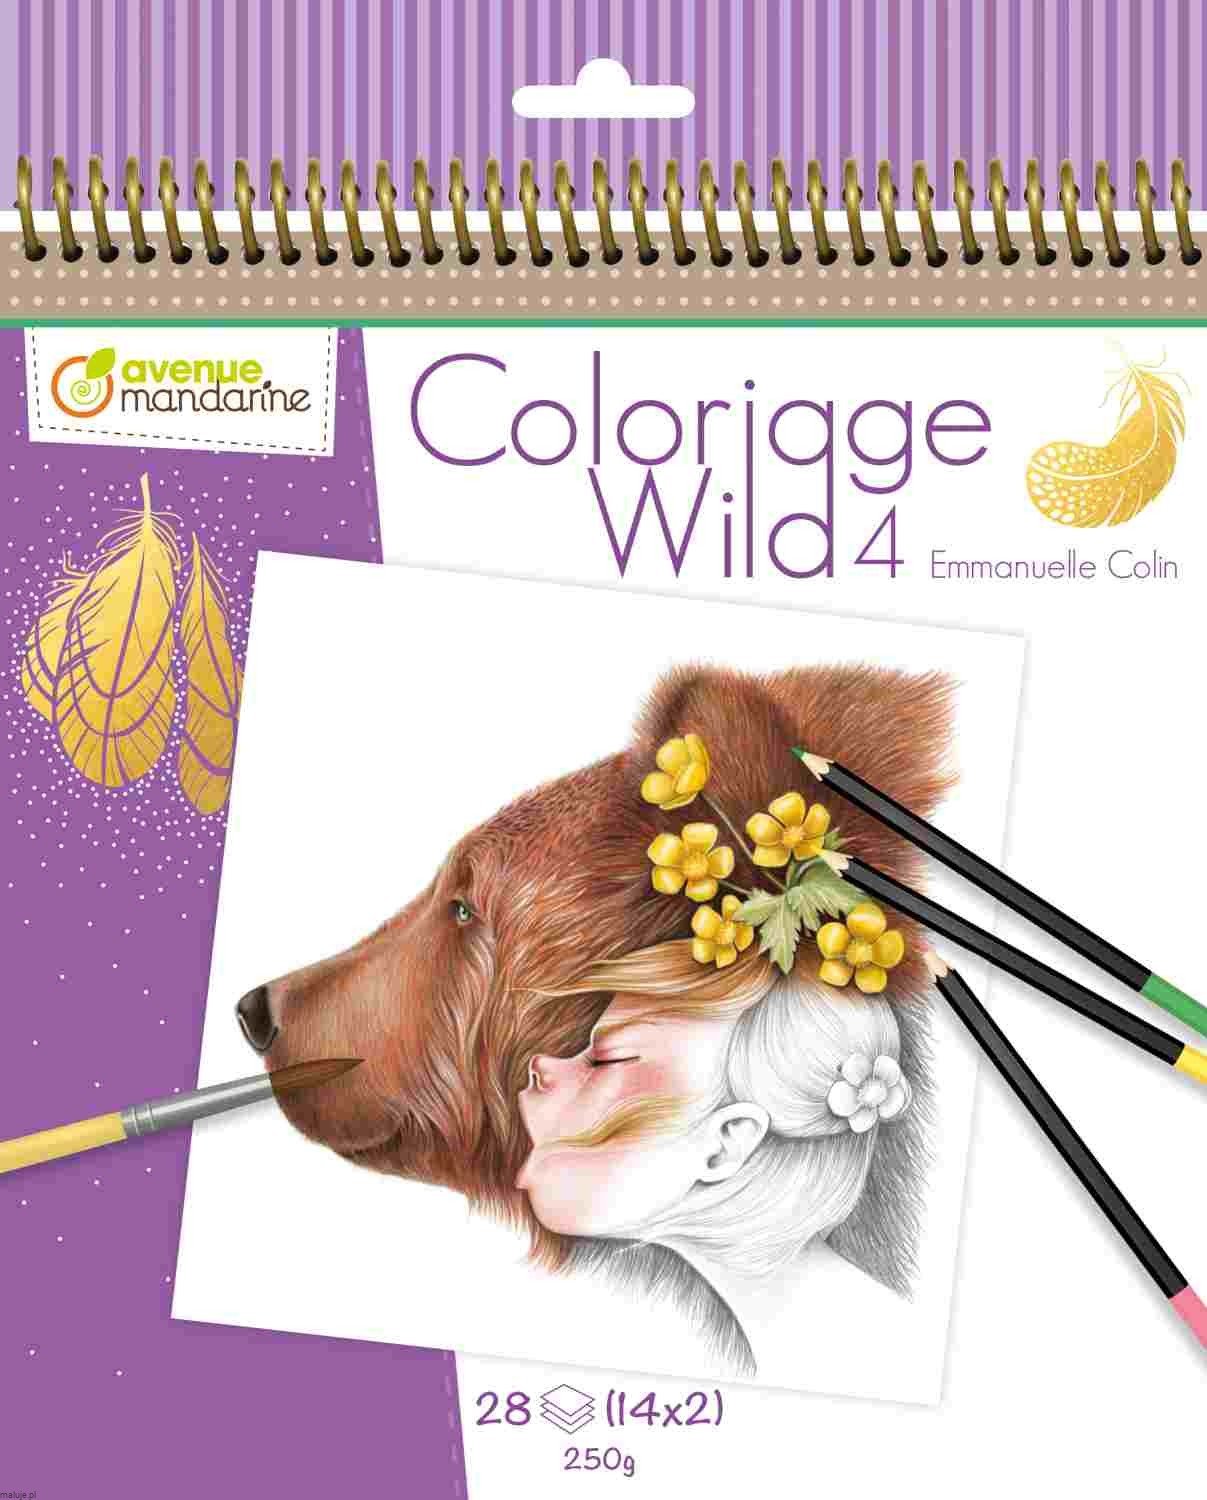 Coloriage Wild 4 by Emanuelle Colin 20x20 14 wzorów x2 - kolorowanki zaawansowane 28 ark